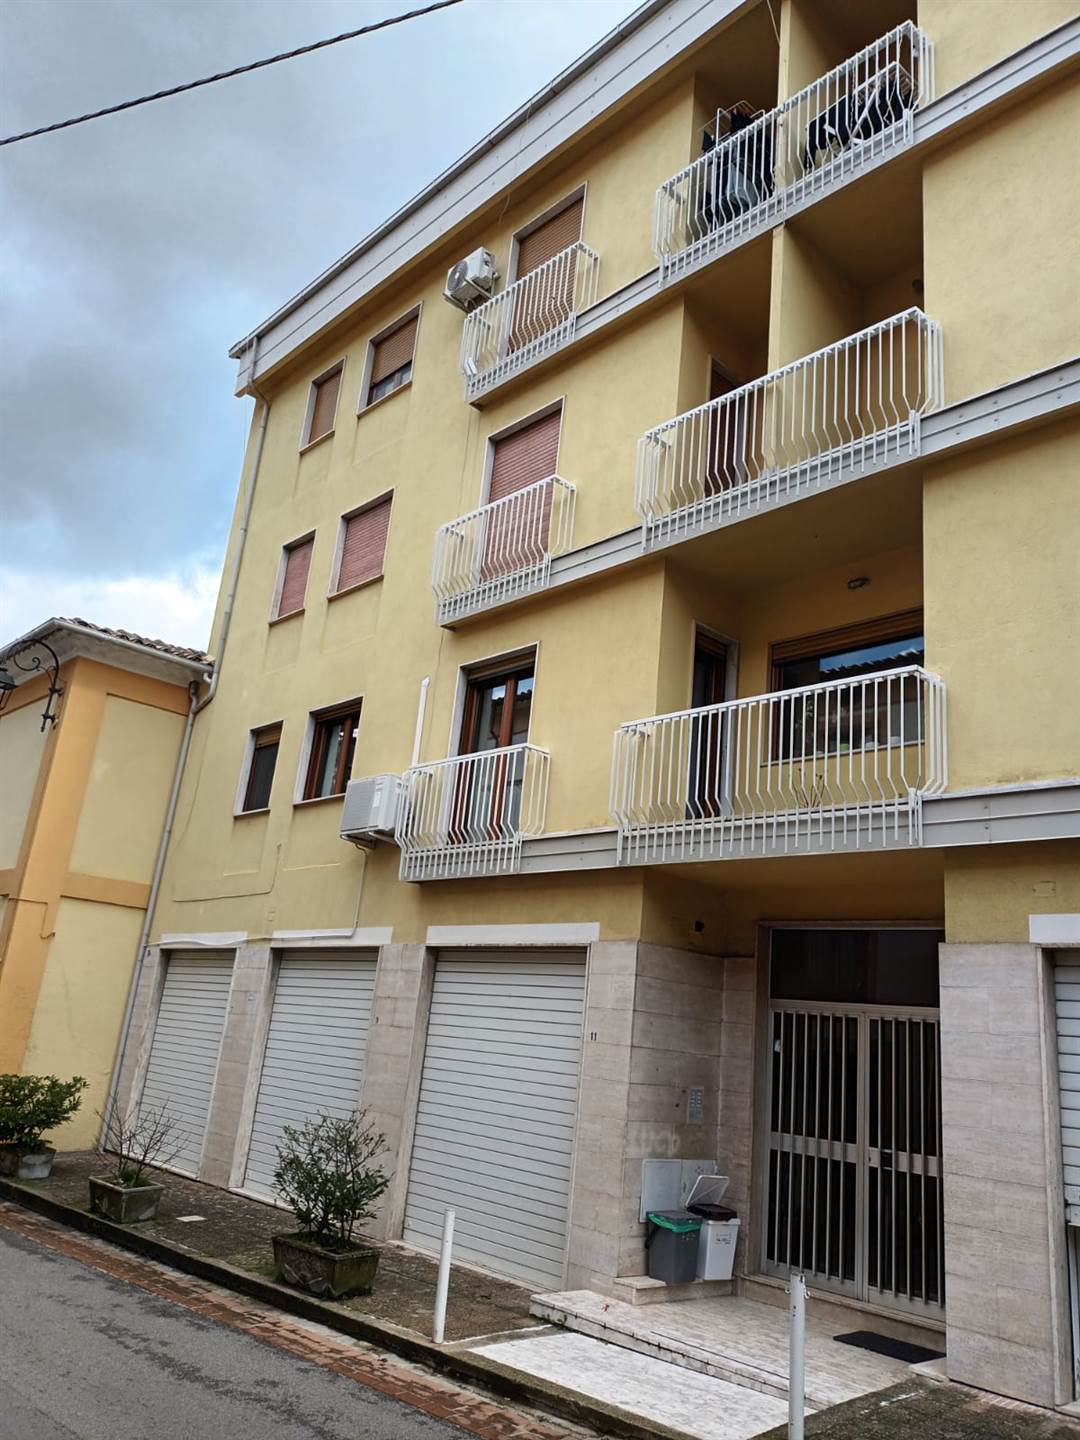 Appartamento in affitto a Mendicino, 3 locali, zona rio, prezzo € 400 | PortaleAgenzieImmobiliari.it